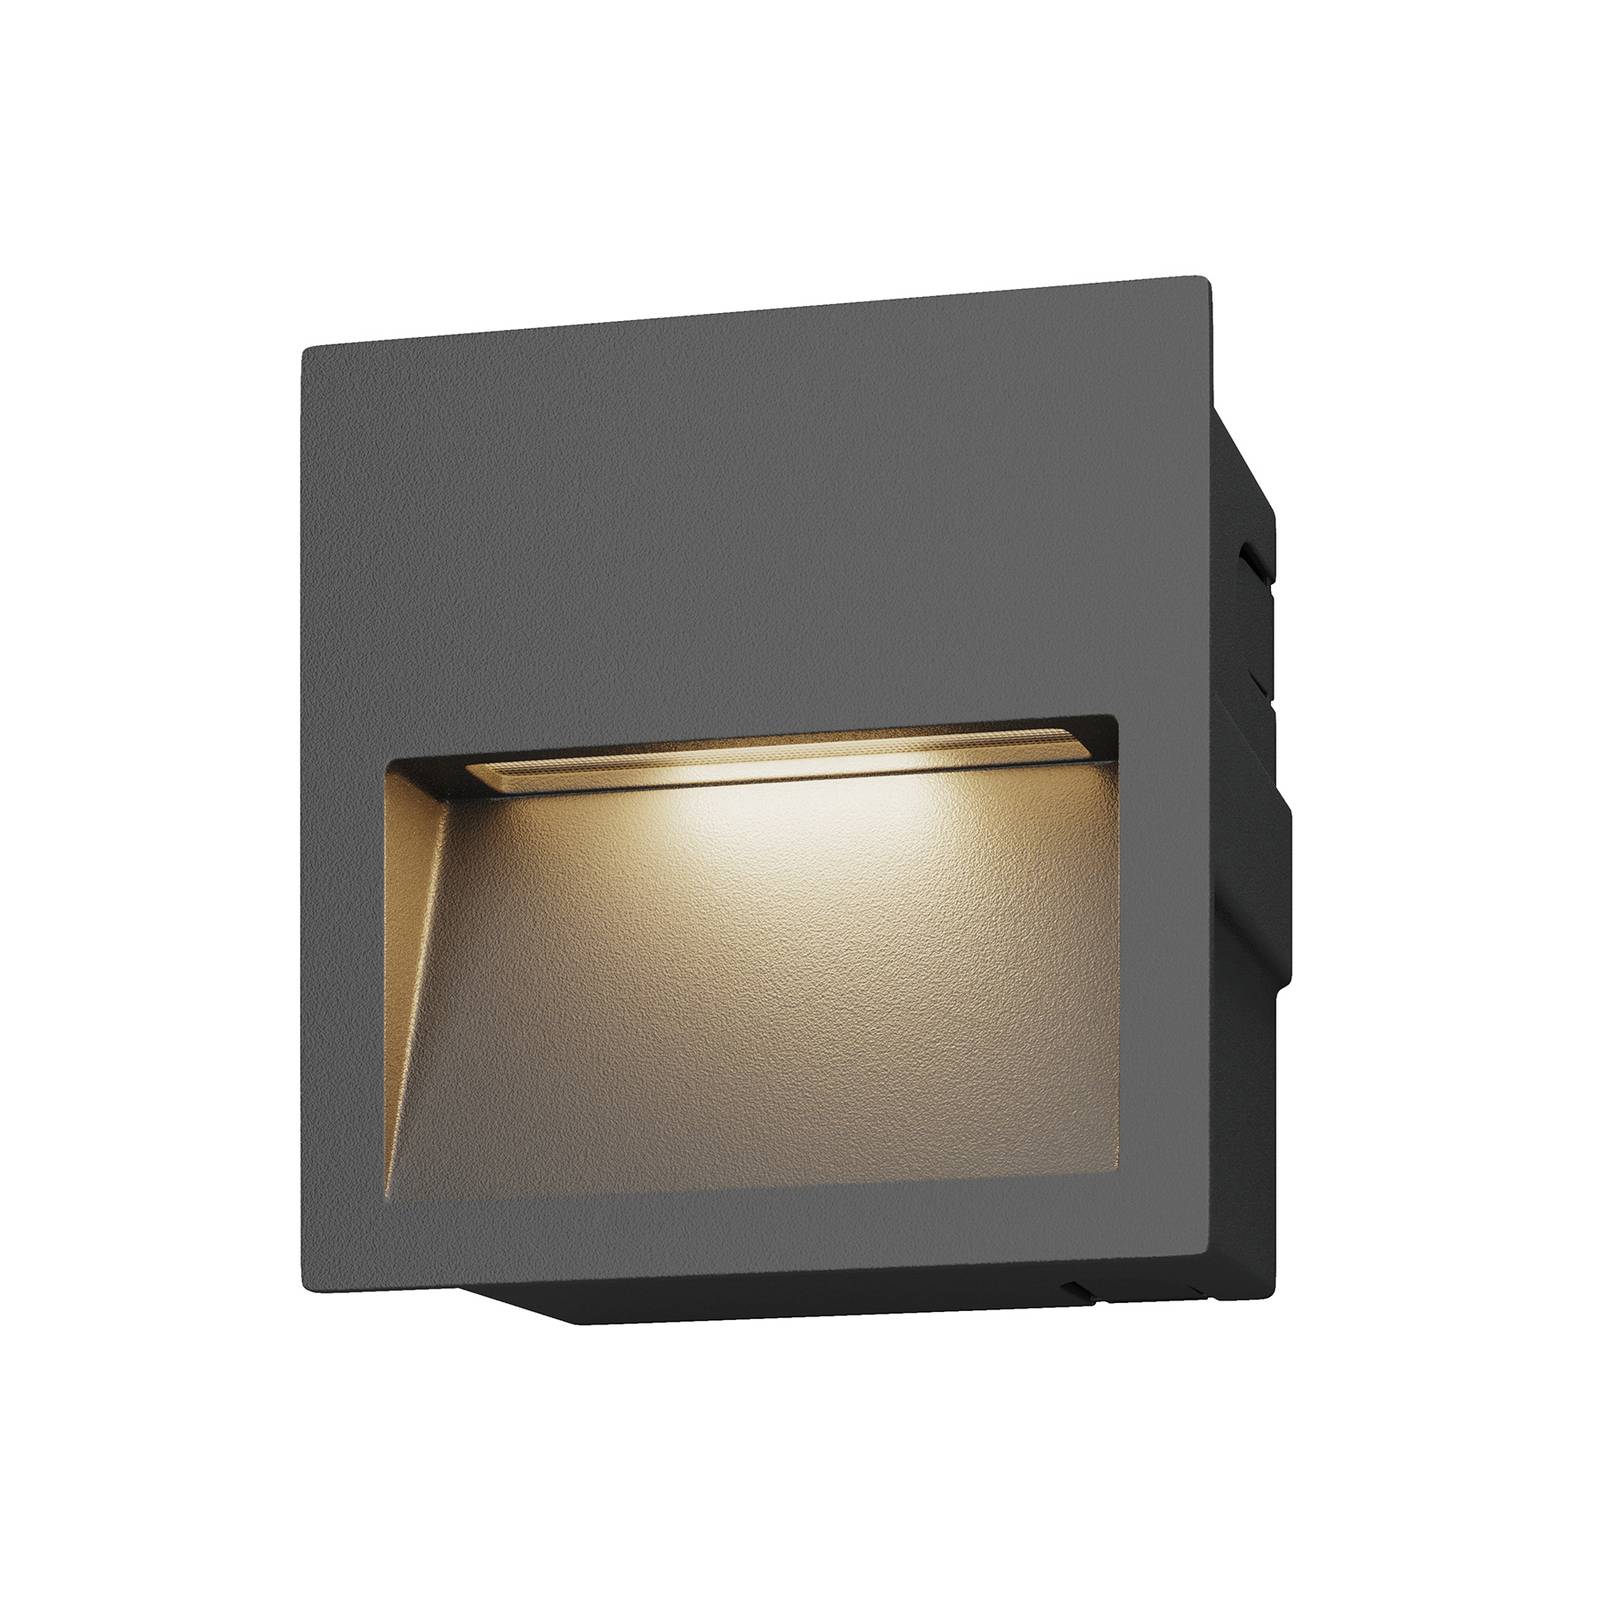 LUCANDE Quadratische LED-Wandeinbaulampe Loya für außen